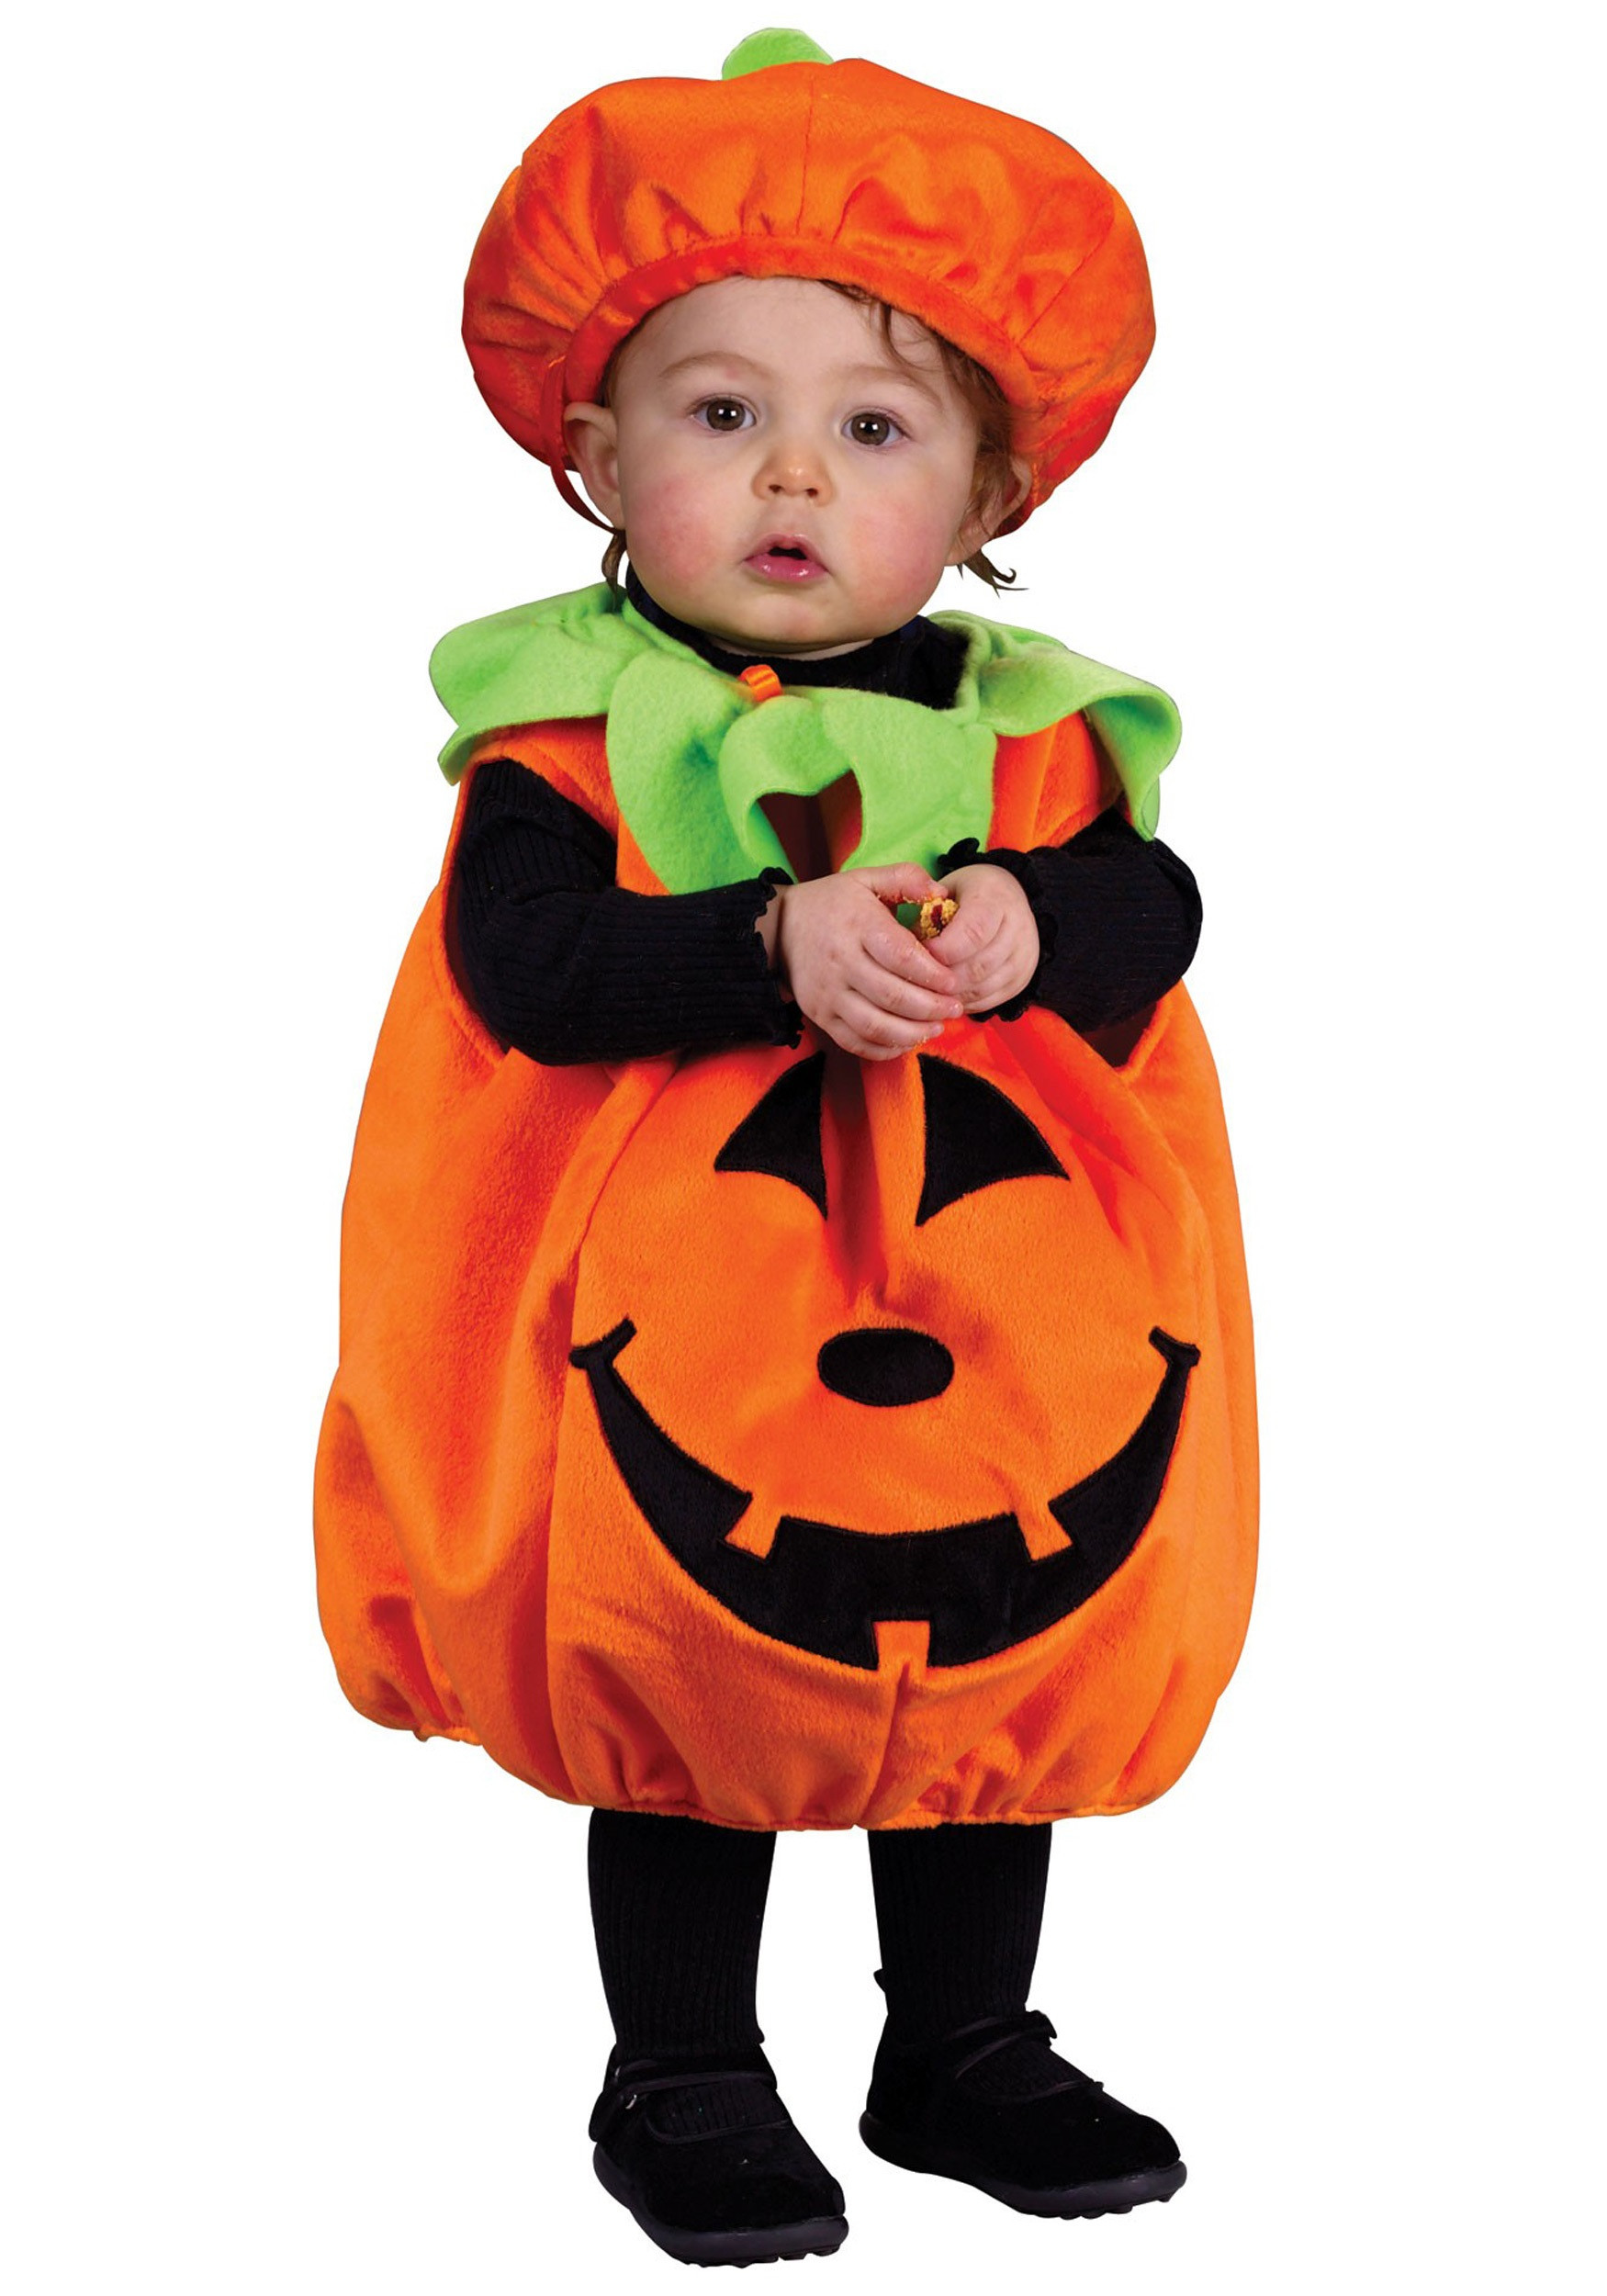 DIY Baby Pumpkin Costume
 Infant Pumpkin Costume